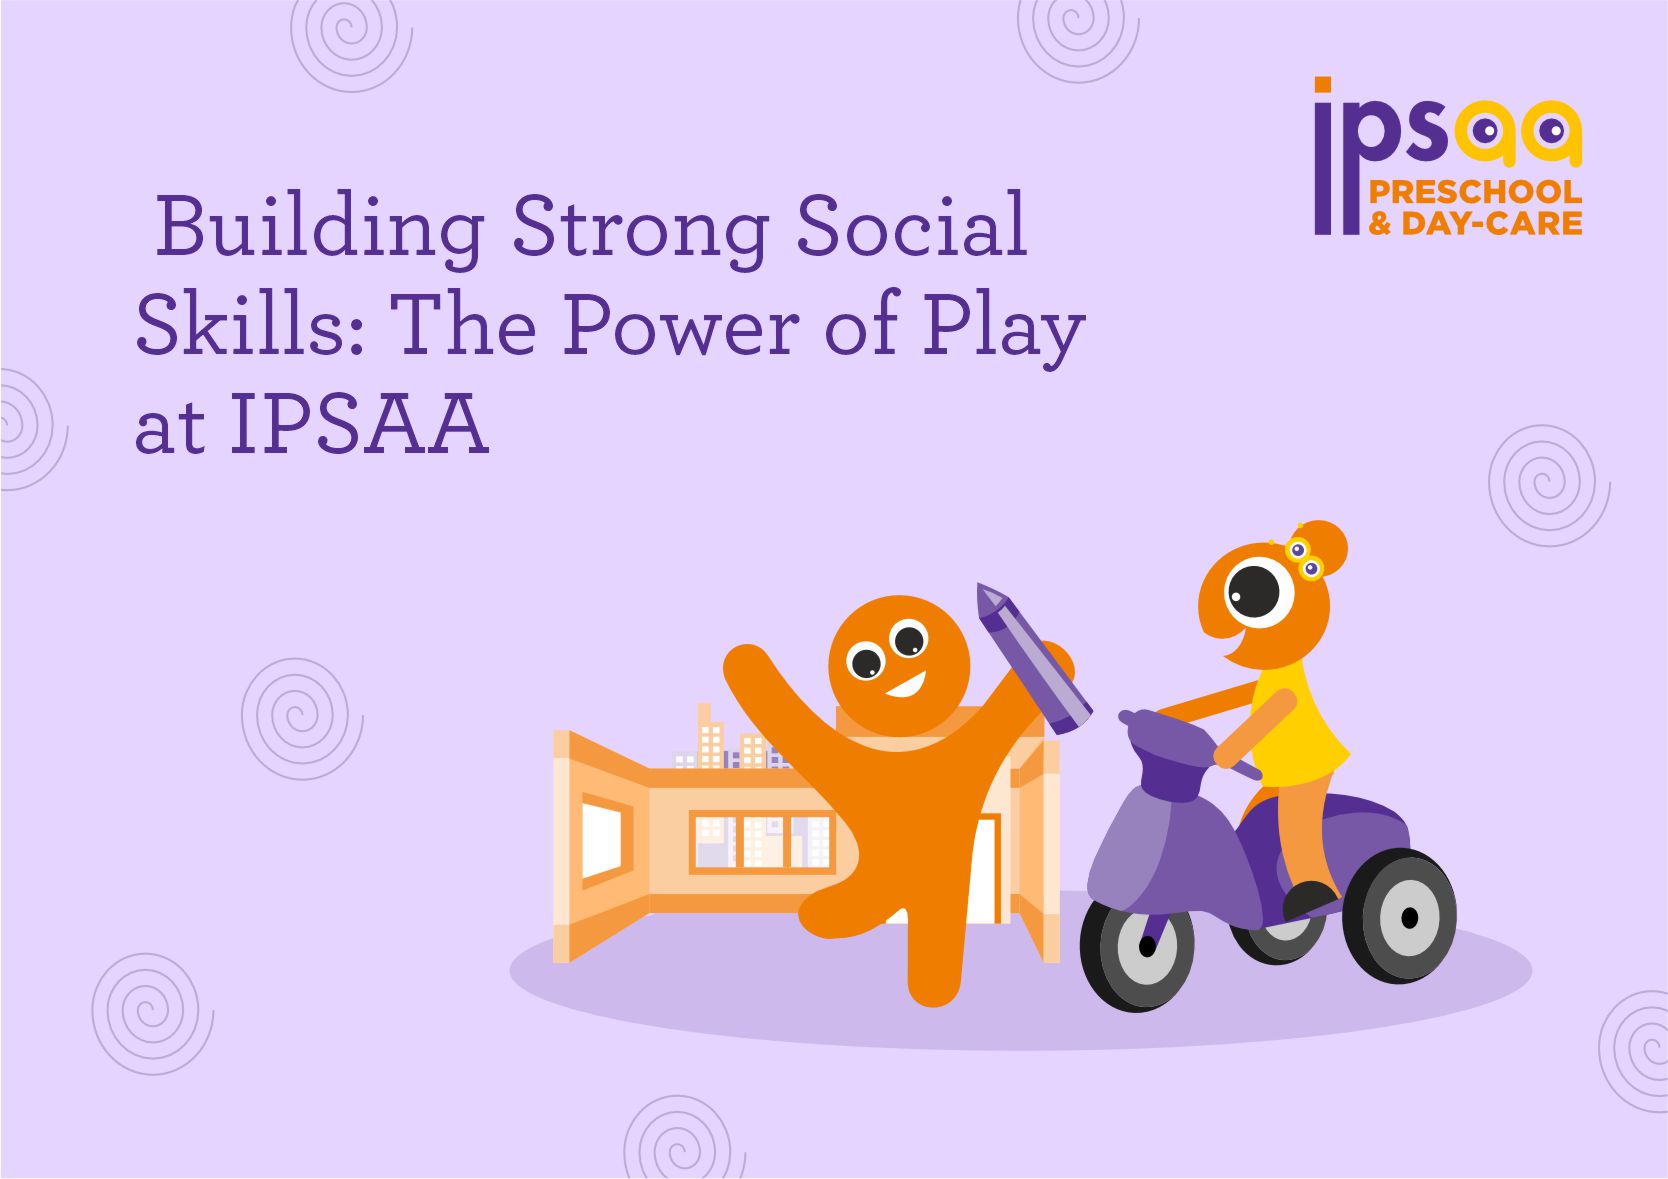 More Than Monkey Bars: Building Strong Social Skills Through Play at IPSAA